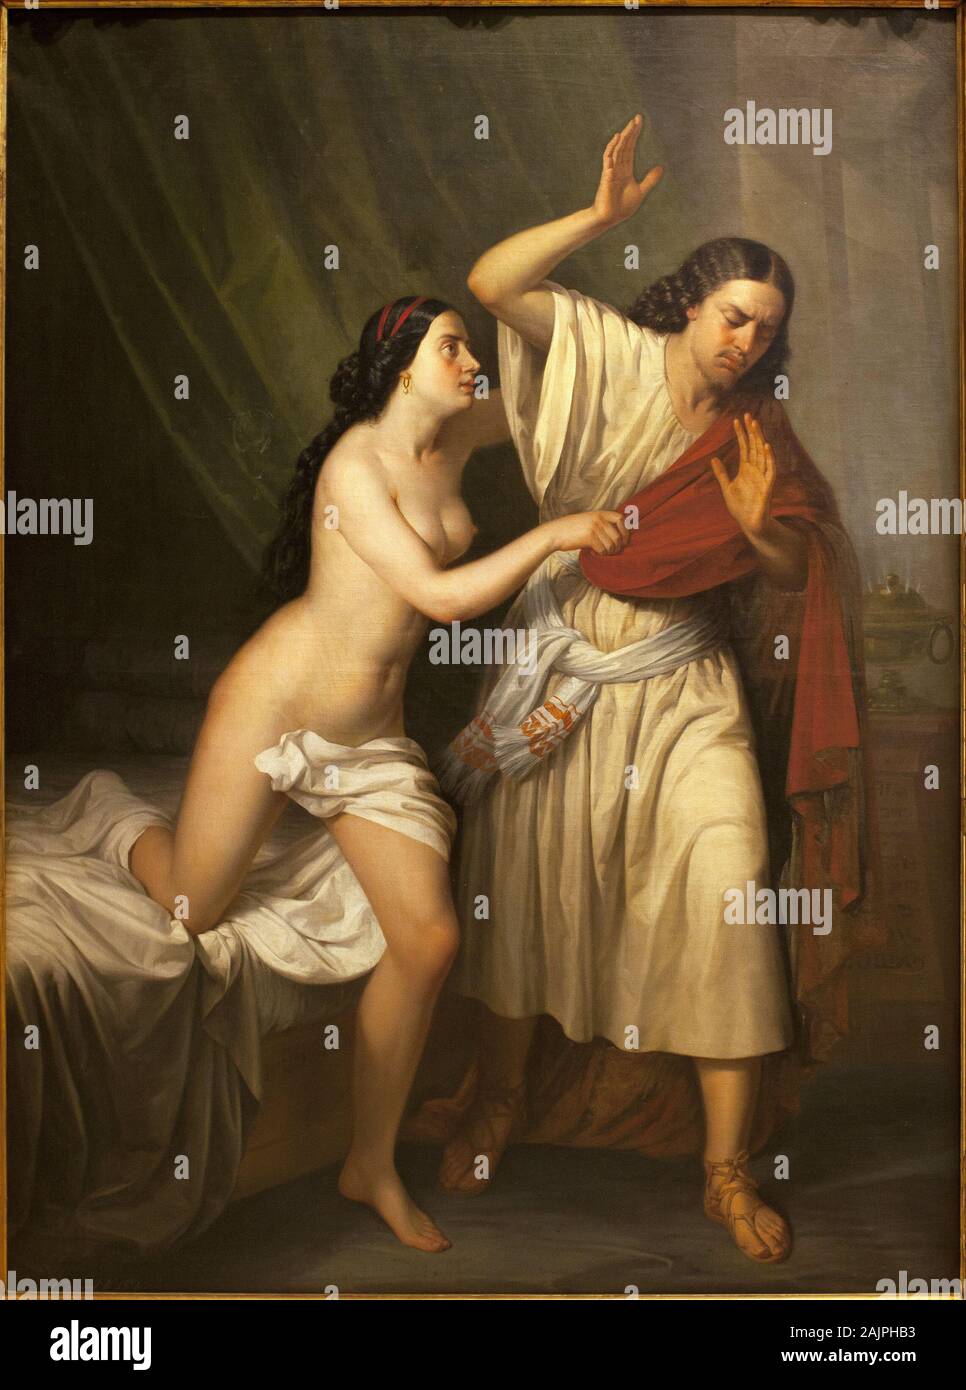 Joseph et la femme de Putiphar Potiphar (). Peinture de Antonio Esquivel (1806-1857), huile sur toile, 1854. Musee des Beaux Arts de Séville, Espagne. Banque D'Images